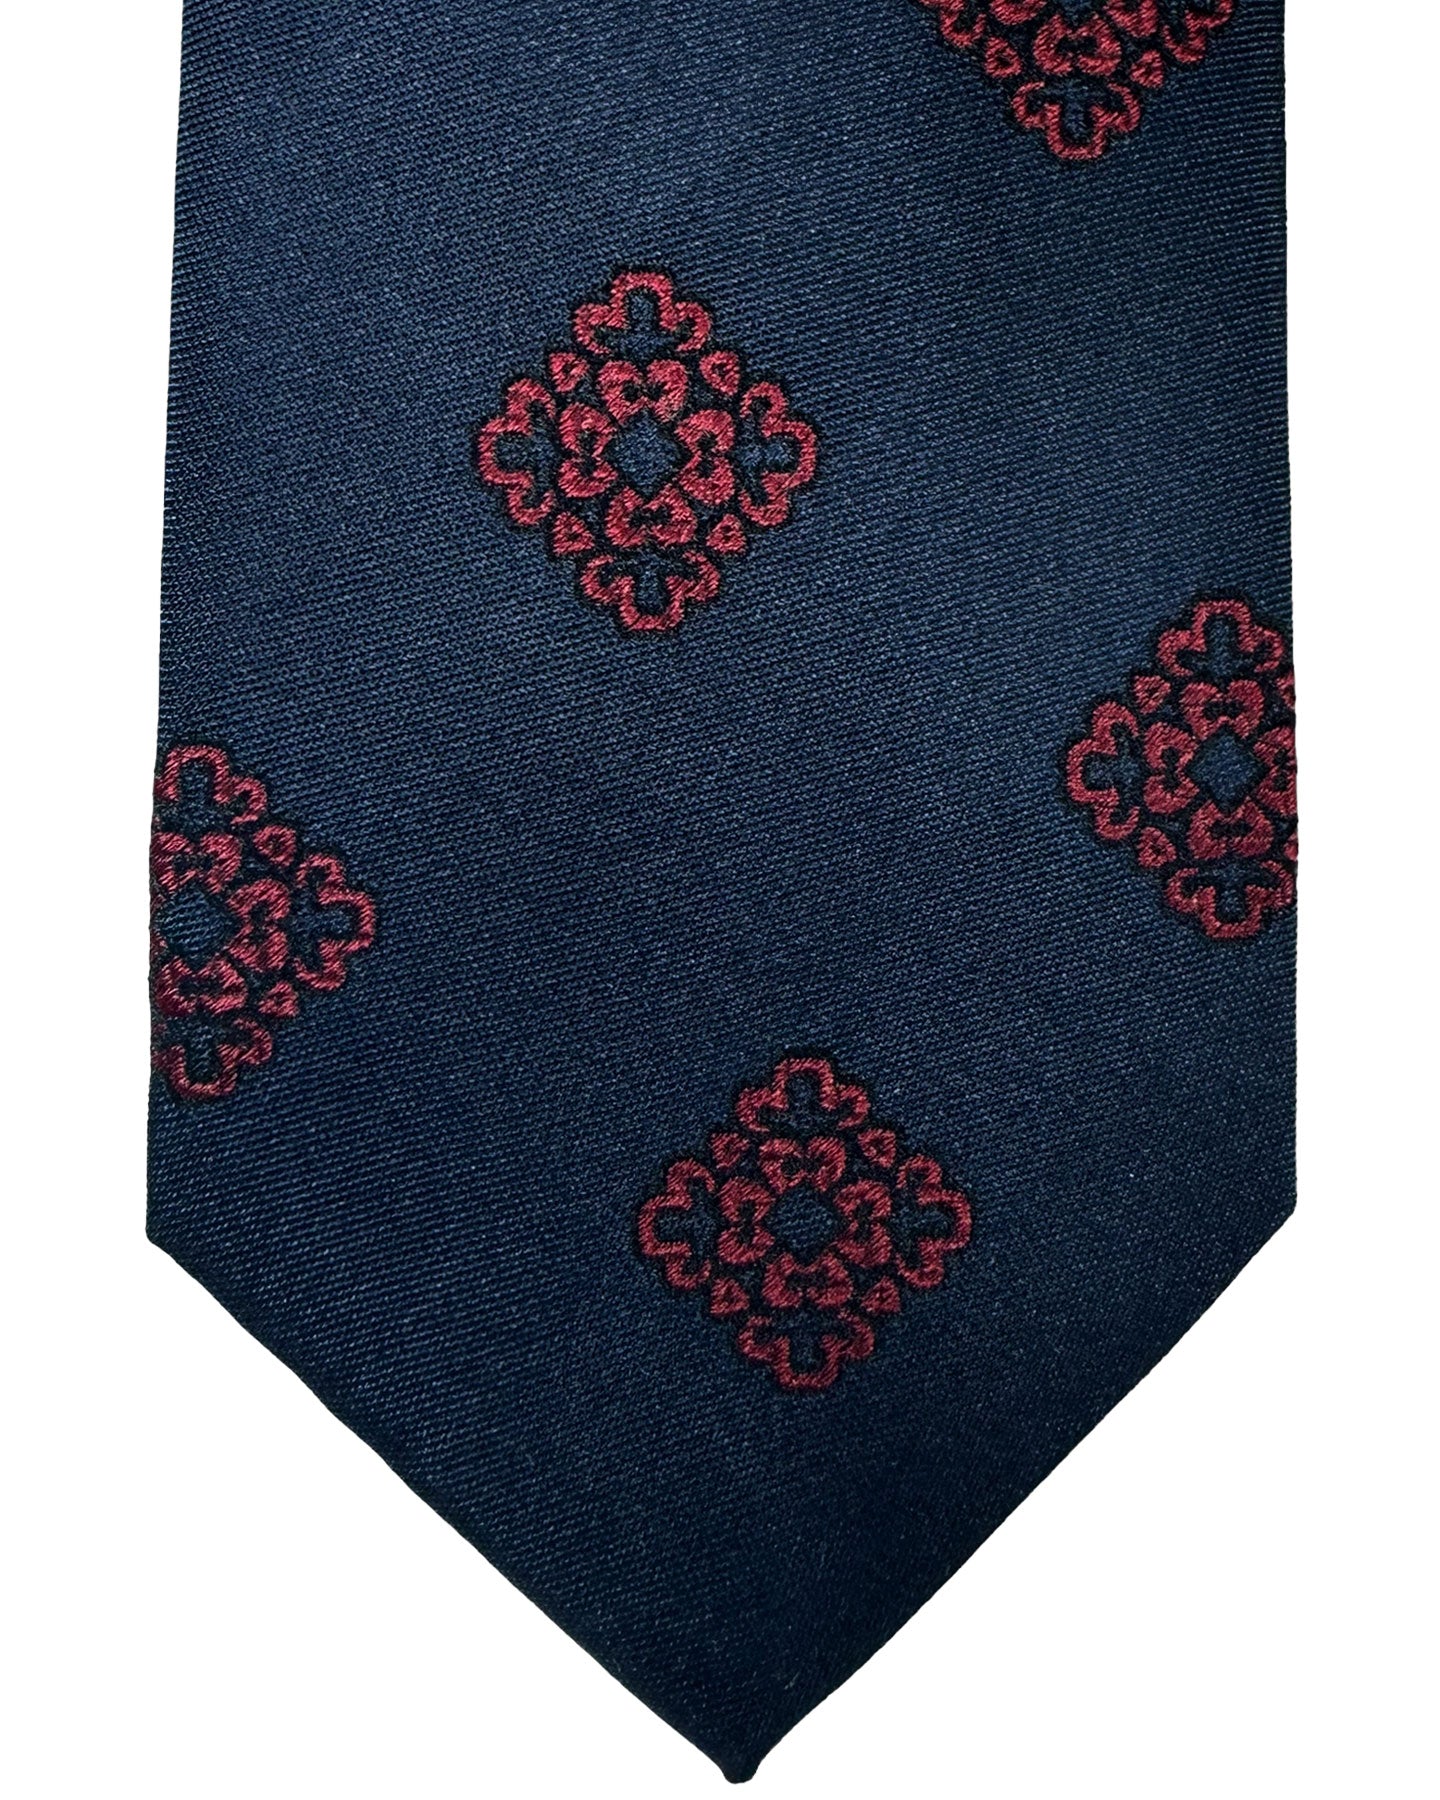 Barba Sevenfold Tie Midnight Blue Magenta Medallions Design - Sartorial Neckwear